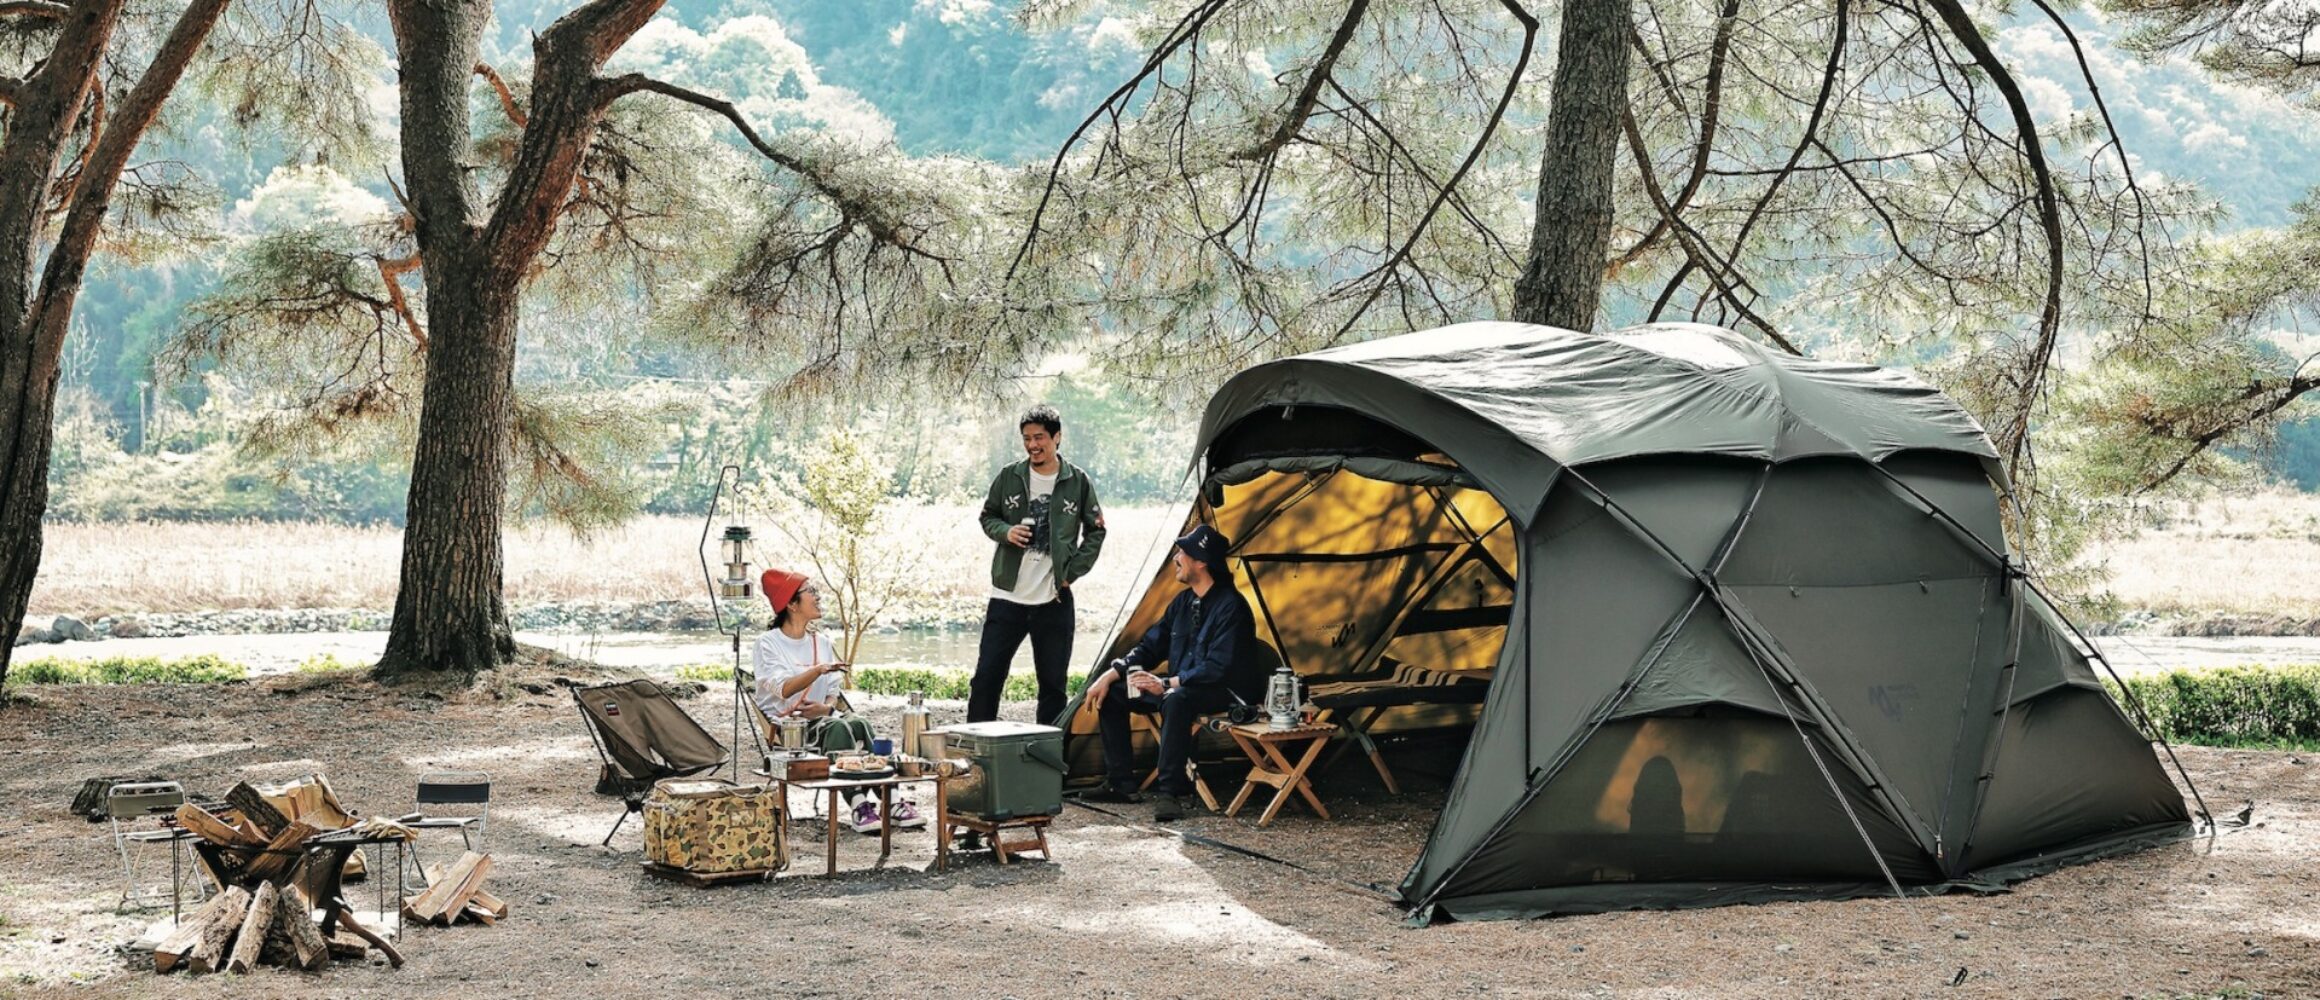 ミニマルワークスの新型ドームテントはどんなキャンプスタイルにハマるのか!? 使い勝手を最速レビュー。